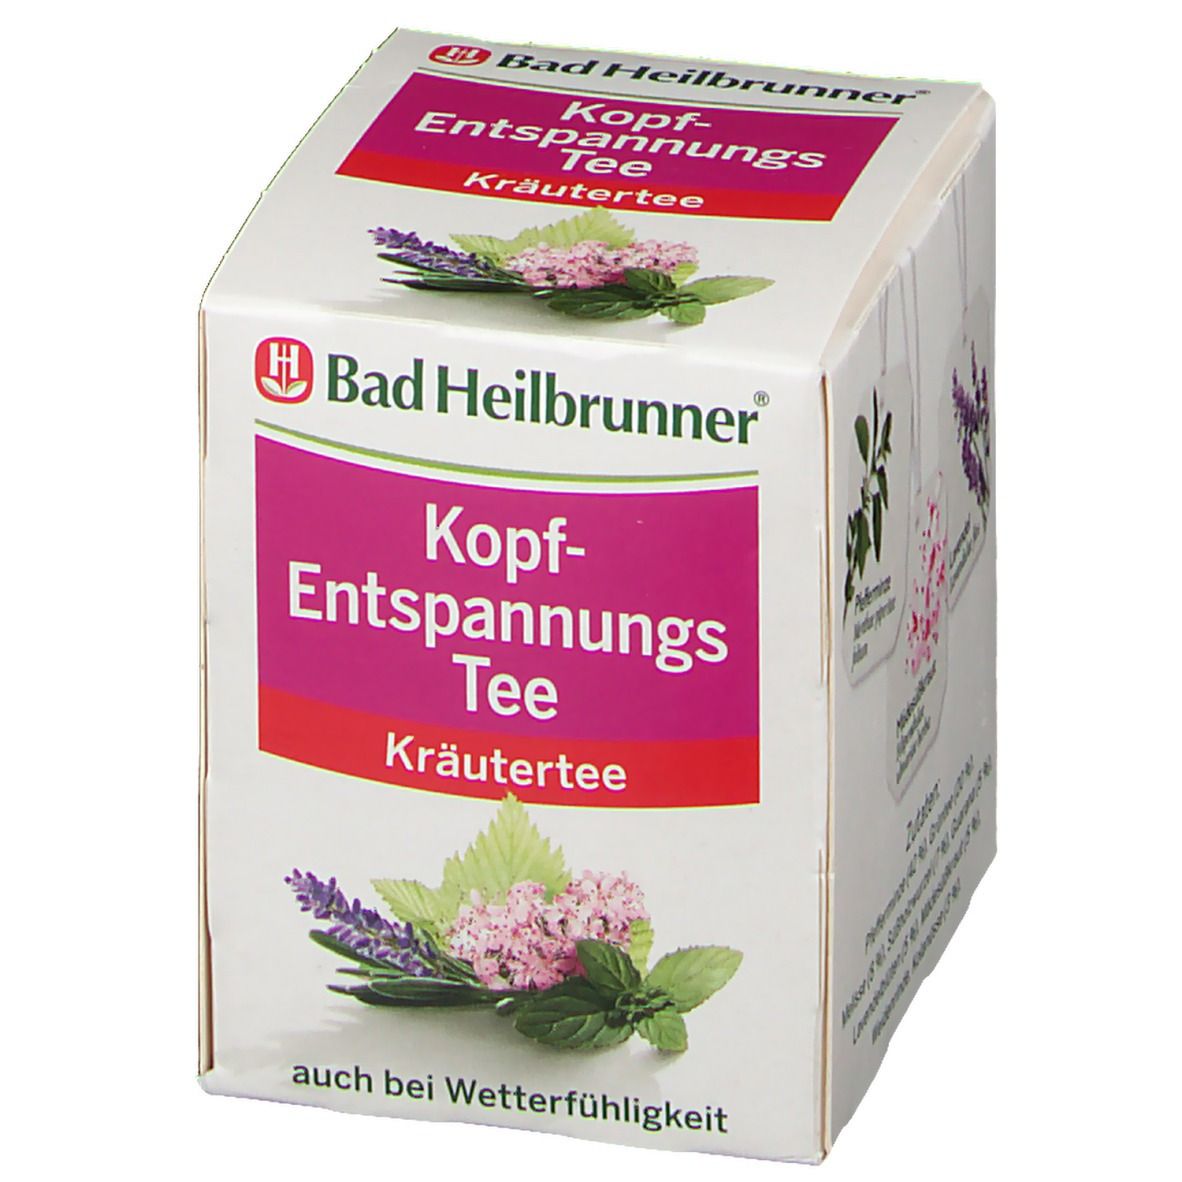 Bad Heilbrunner® Kopf-Entspannungs Tee